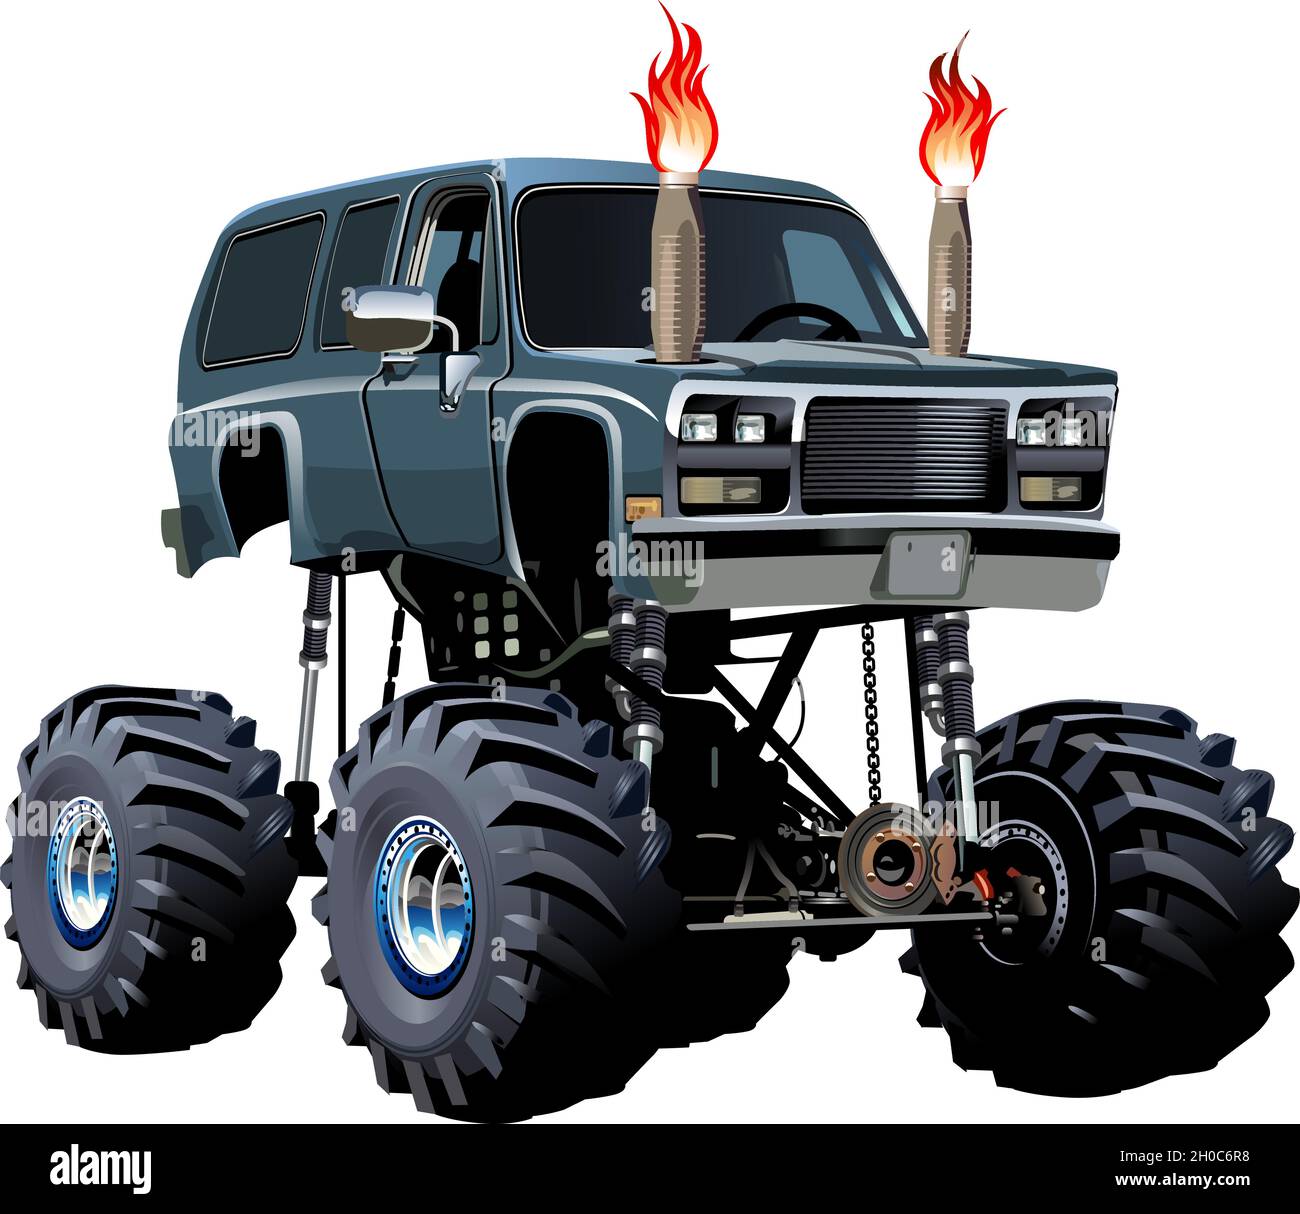 Fumetto Monster Truck. Disponibile EPS-10 separato da gruppi e livelli per una facile modifica Illustrazione Vettoriale